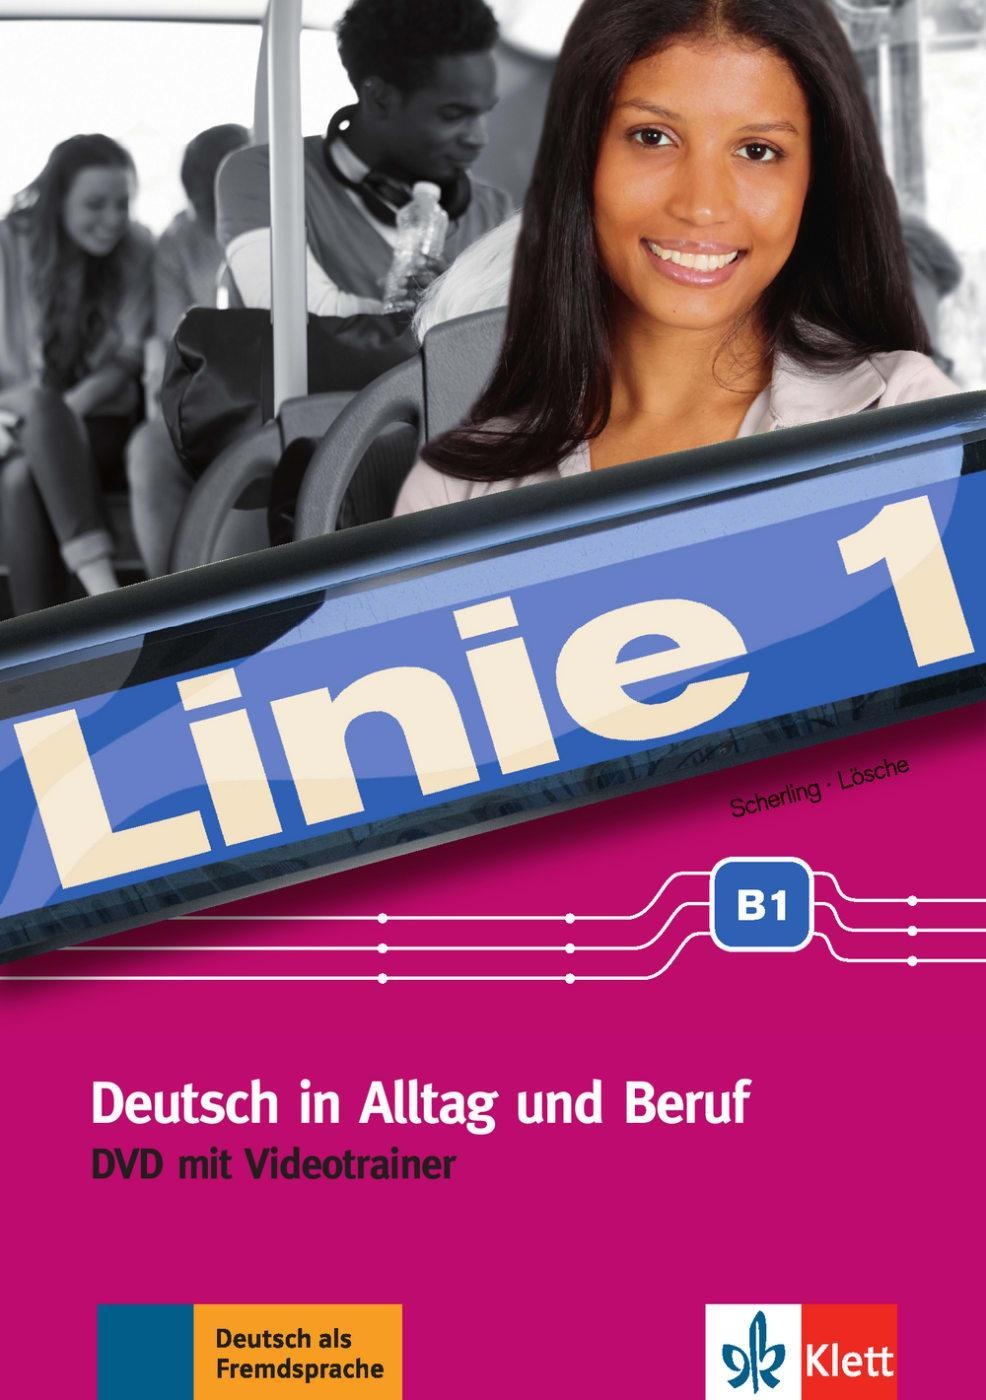 Linie 1: Linie 1 - Videotrainer B1  1 Dvd (DVD)